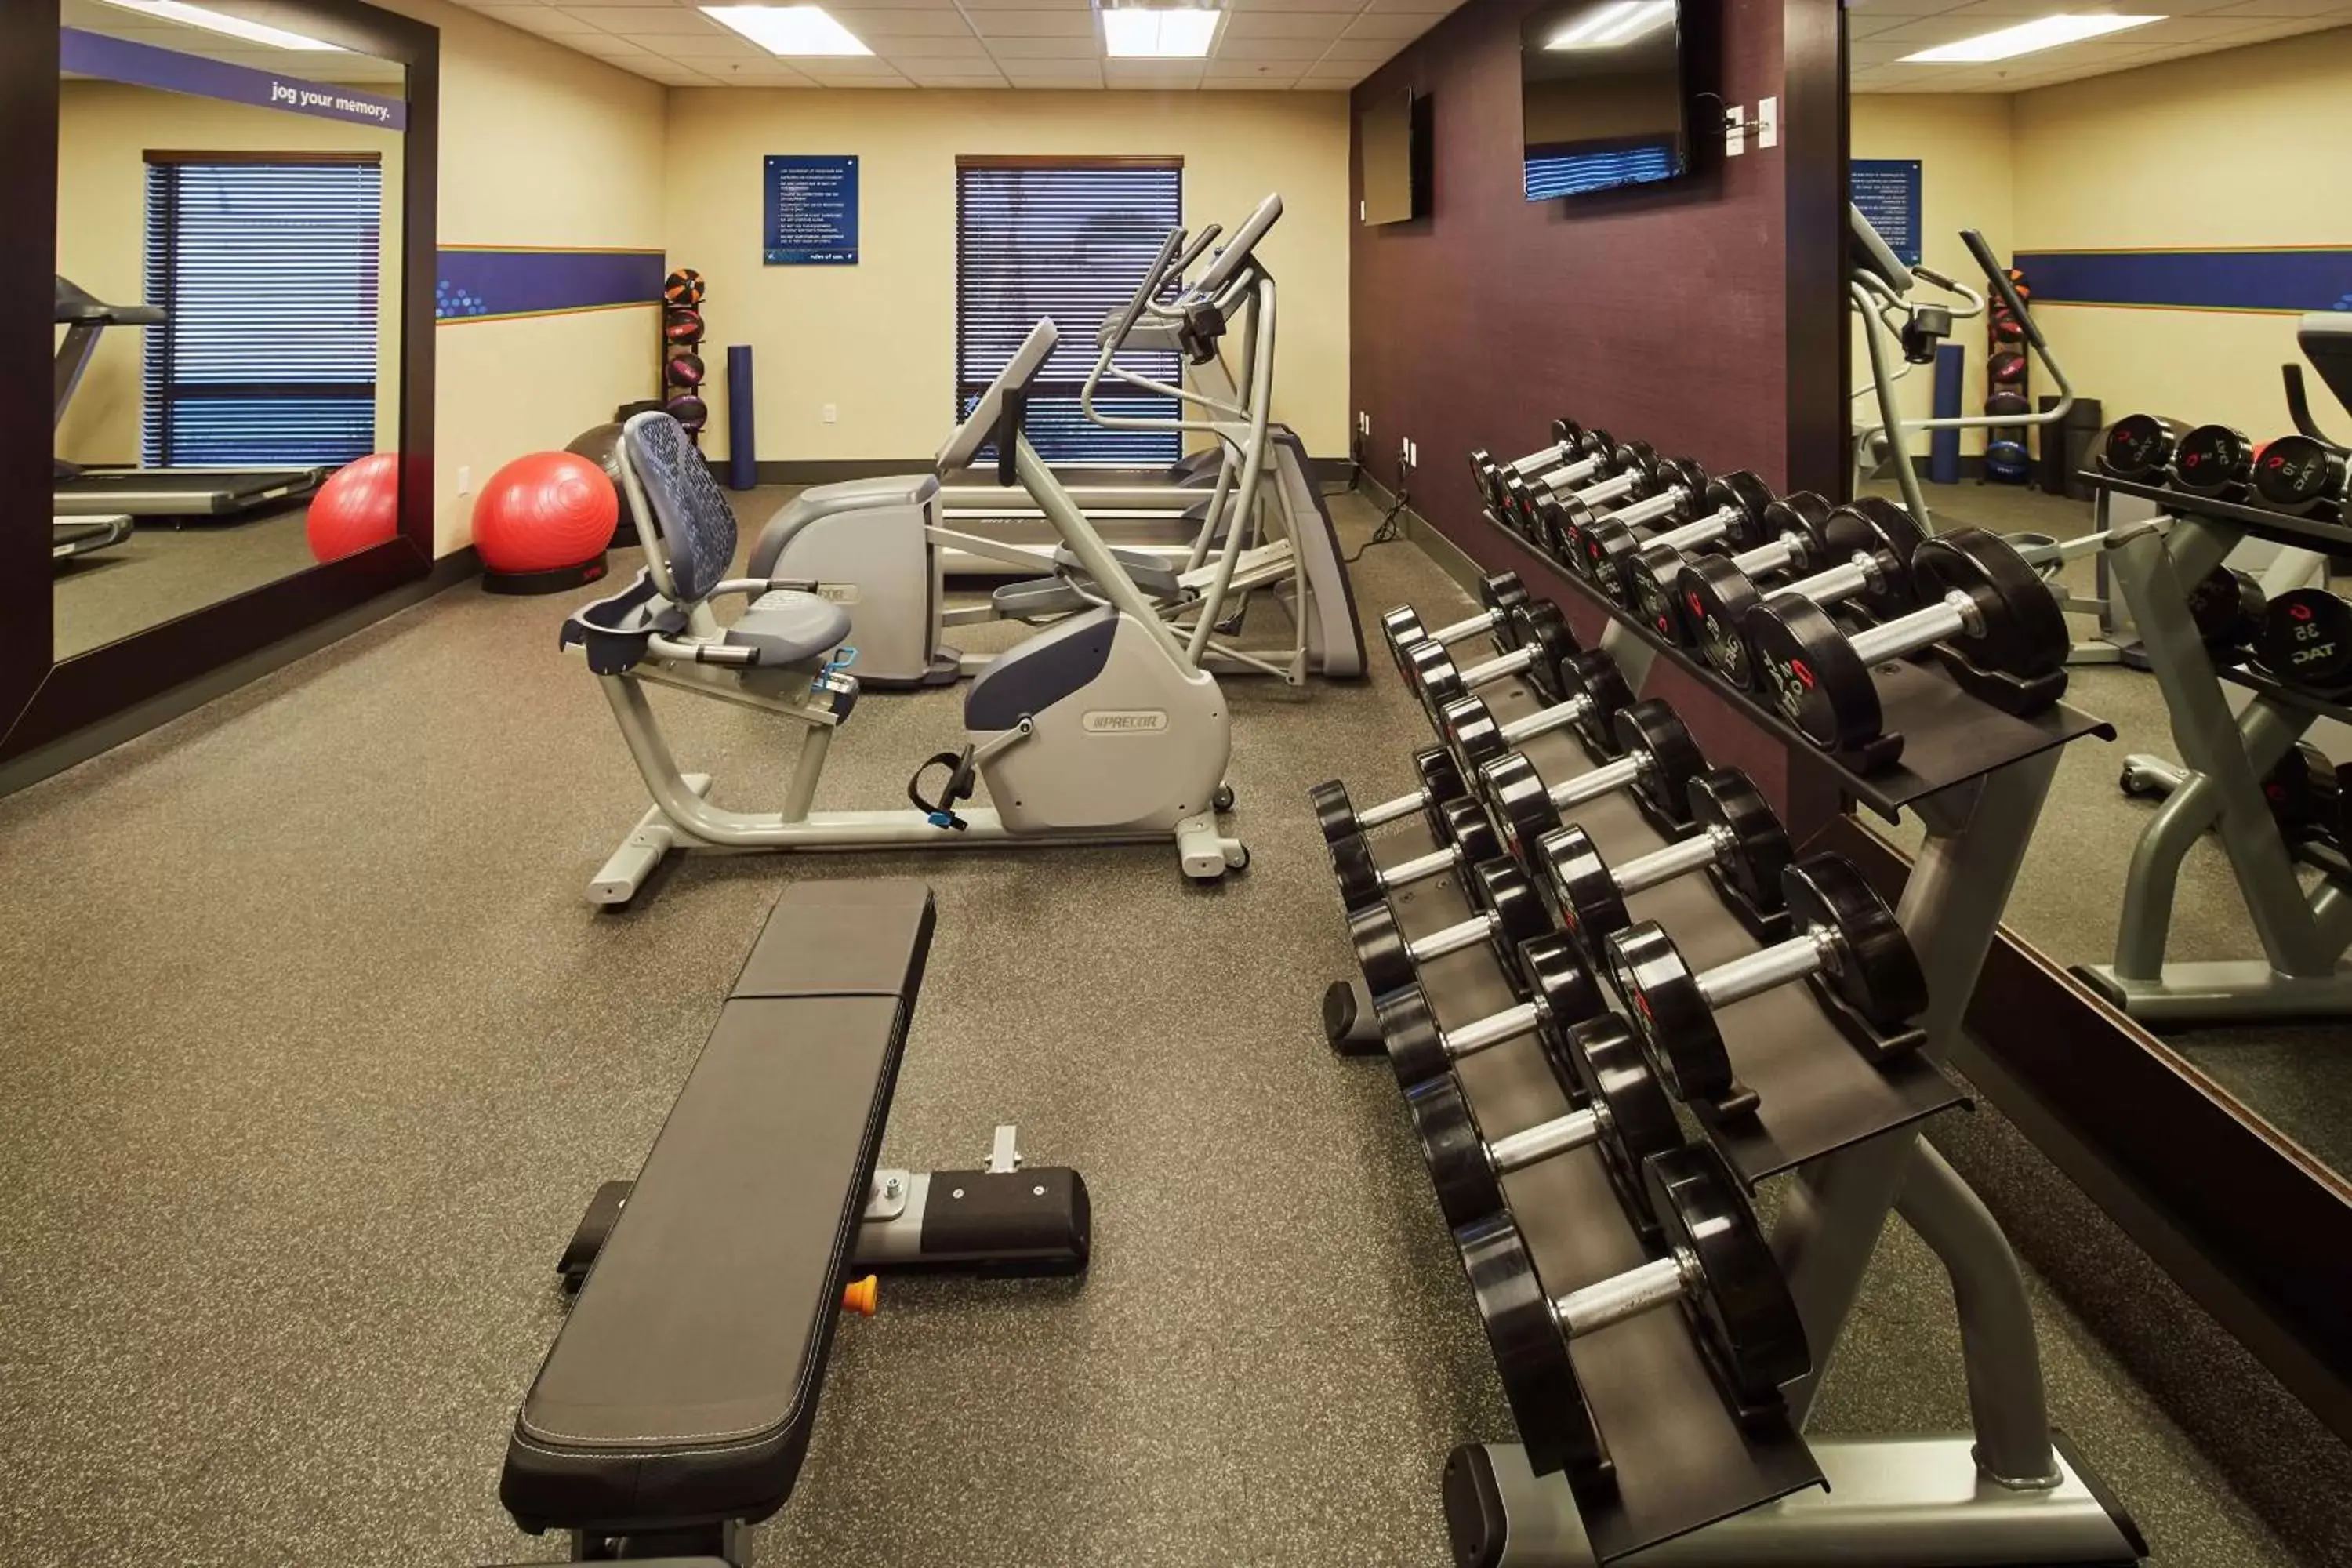 Fitness centre/facilities, Fitness Center/Facilities in Hampton Inn Parker, AZ